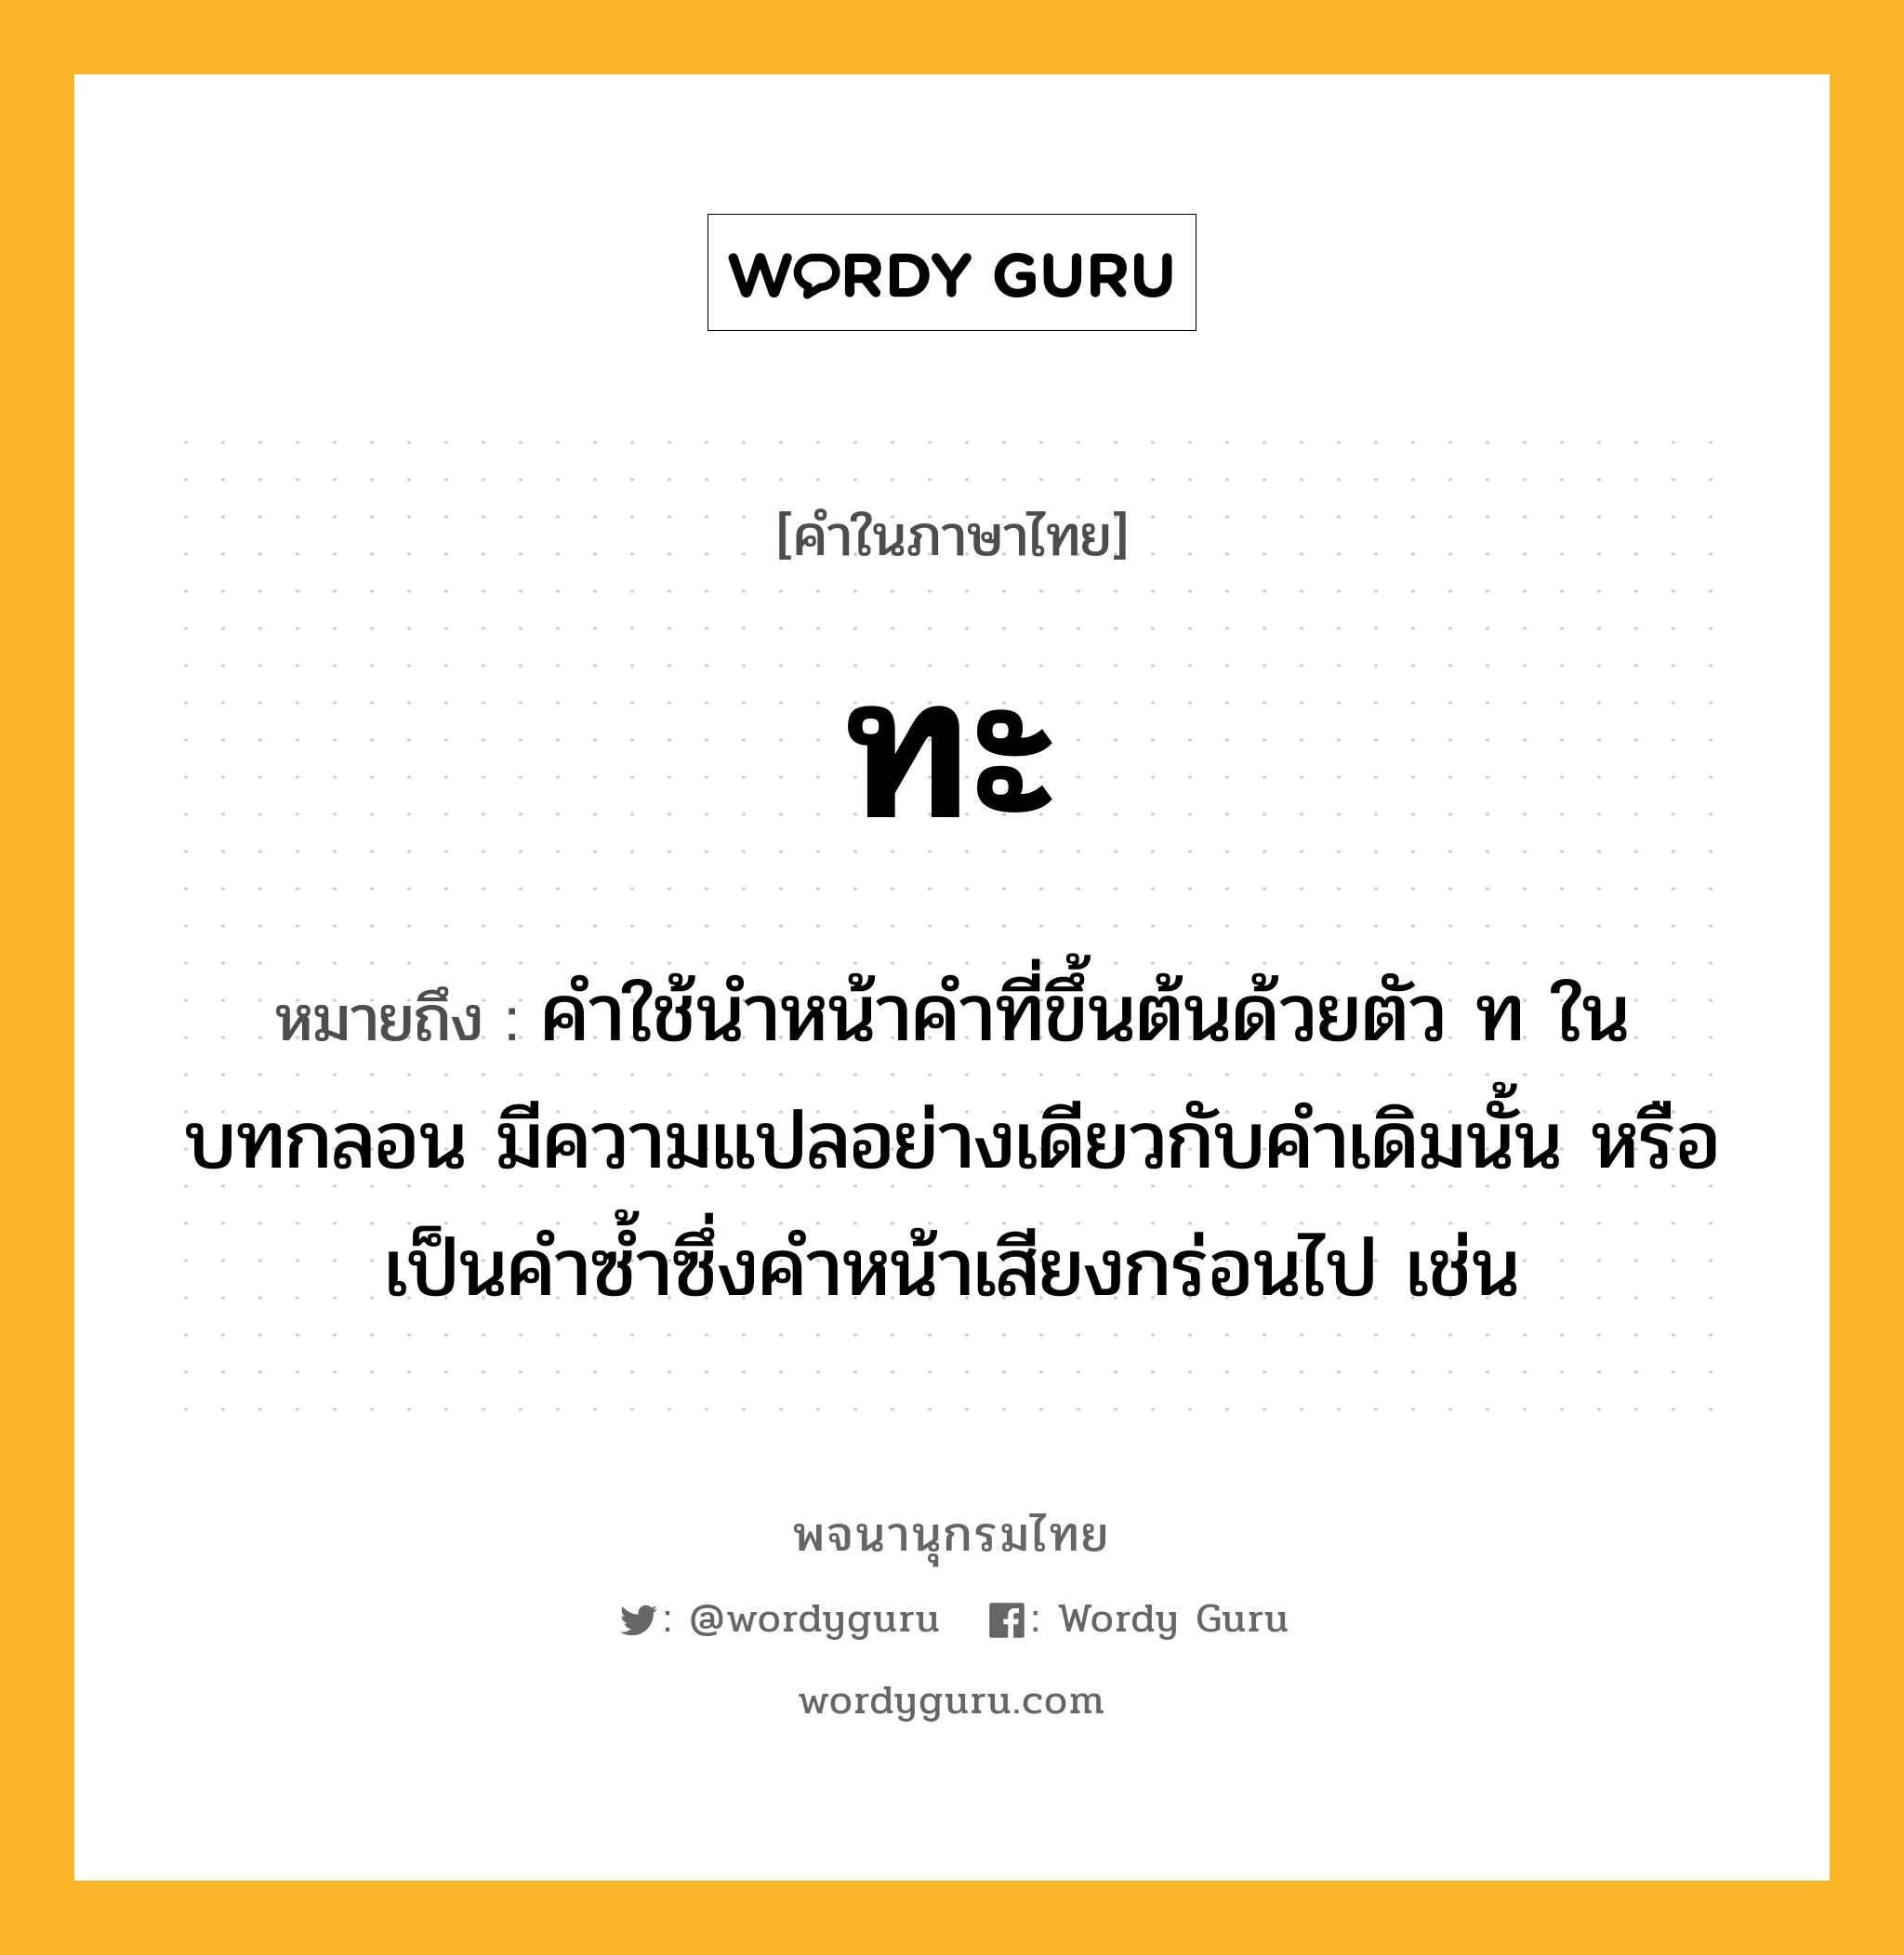 ทะ หมายถึงอะไร?, คำในภาษาไทย ทะ หมายถึง คําใช้นําหน้าคําที่ขึ้นต้นด้วยตัว ท ในบทกลอน มีความแปลอย่างเดียวกับคําเดิมนั้น หรือเป็นคําซํ้าซึ่งคําหน้าเสียงกร่อนไป เช่น